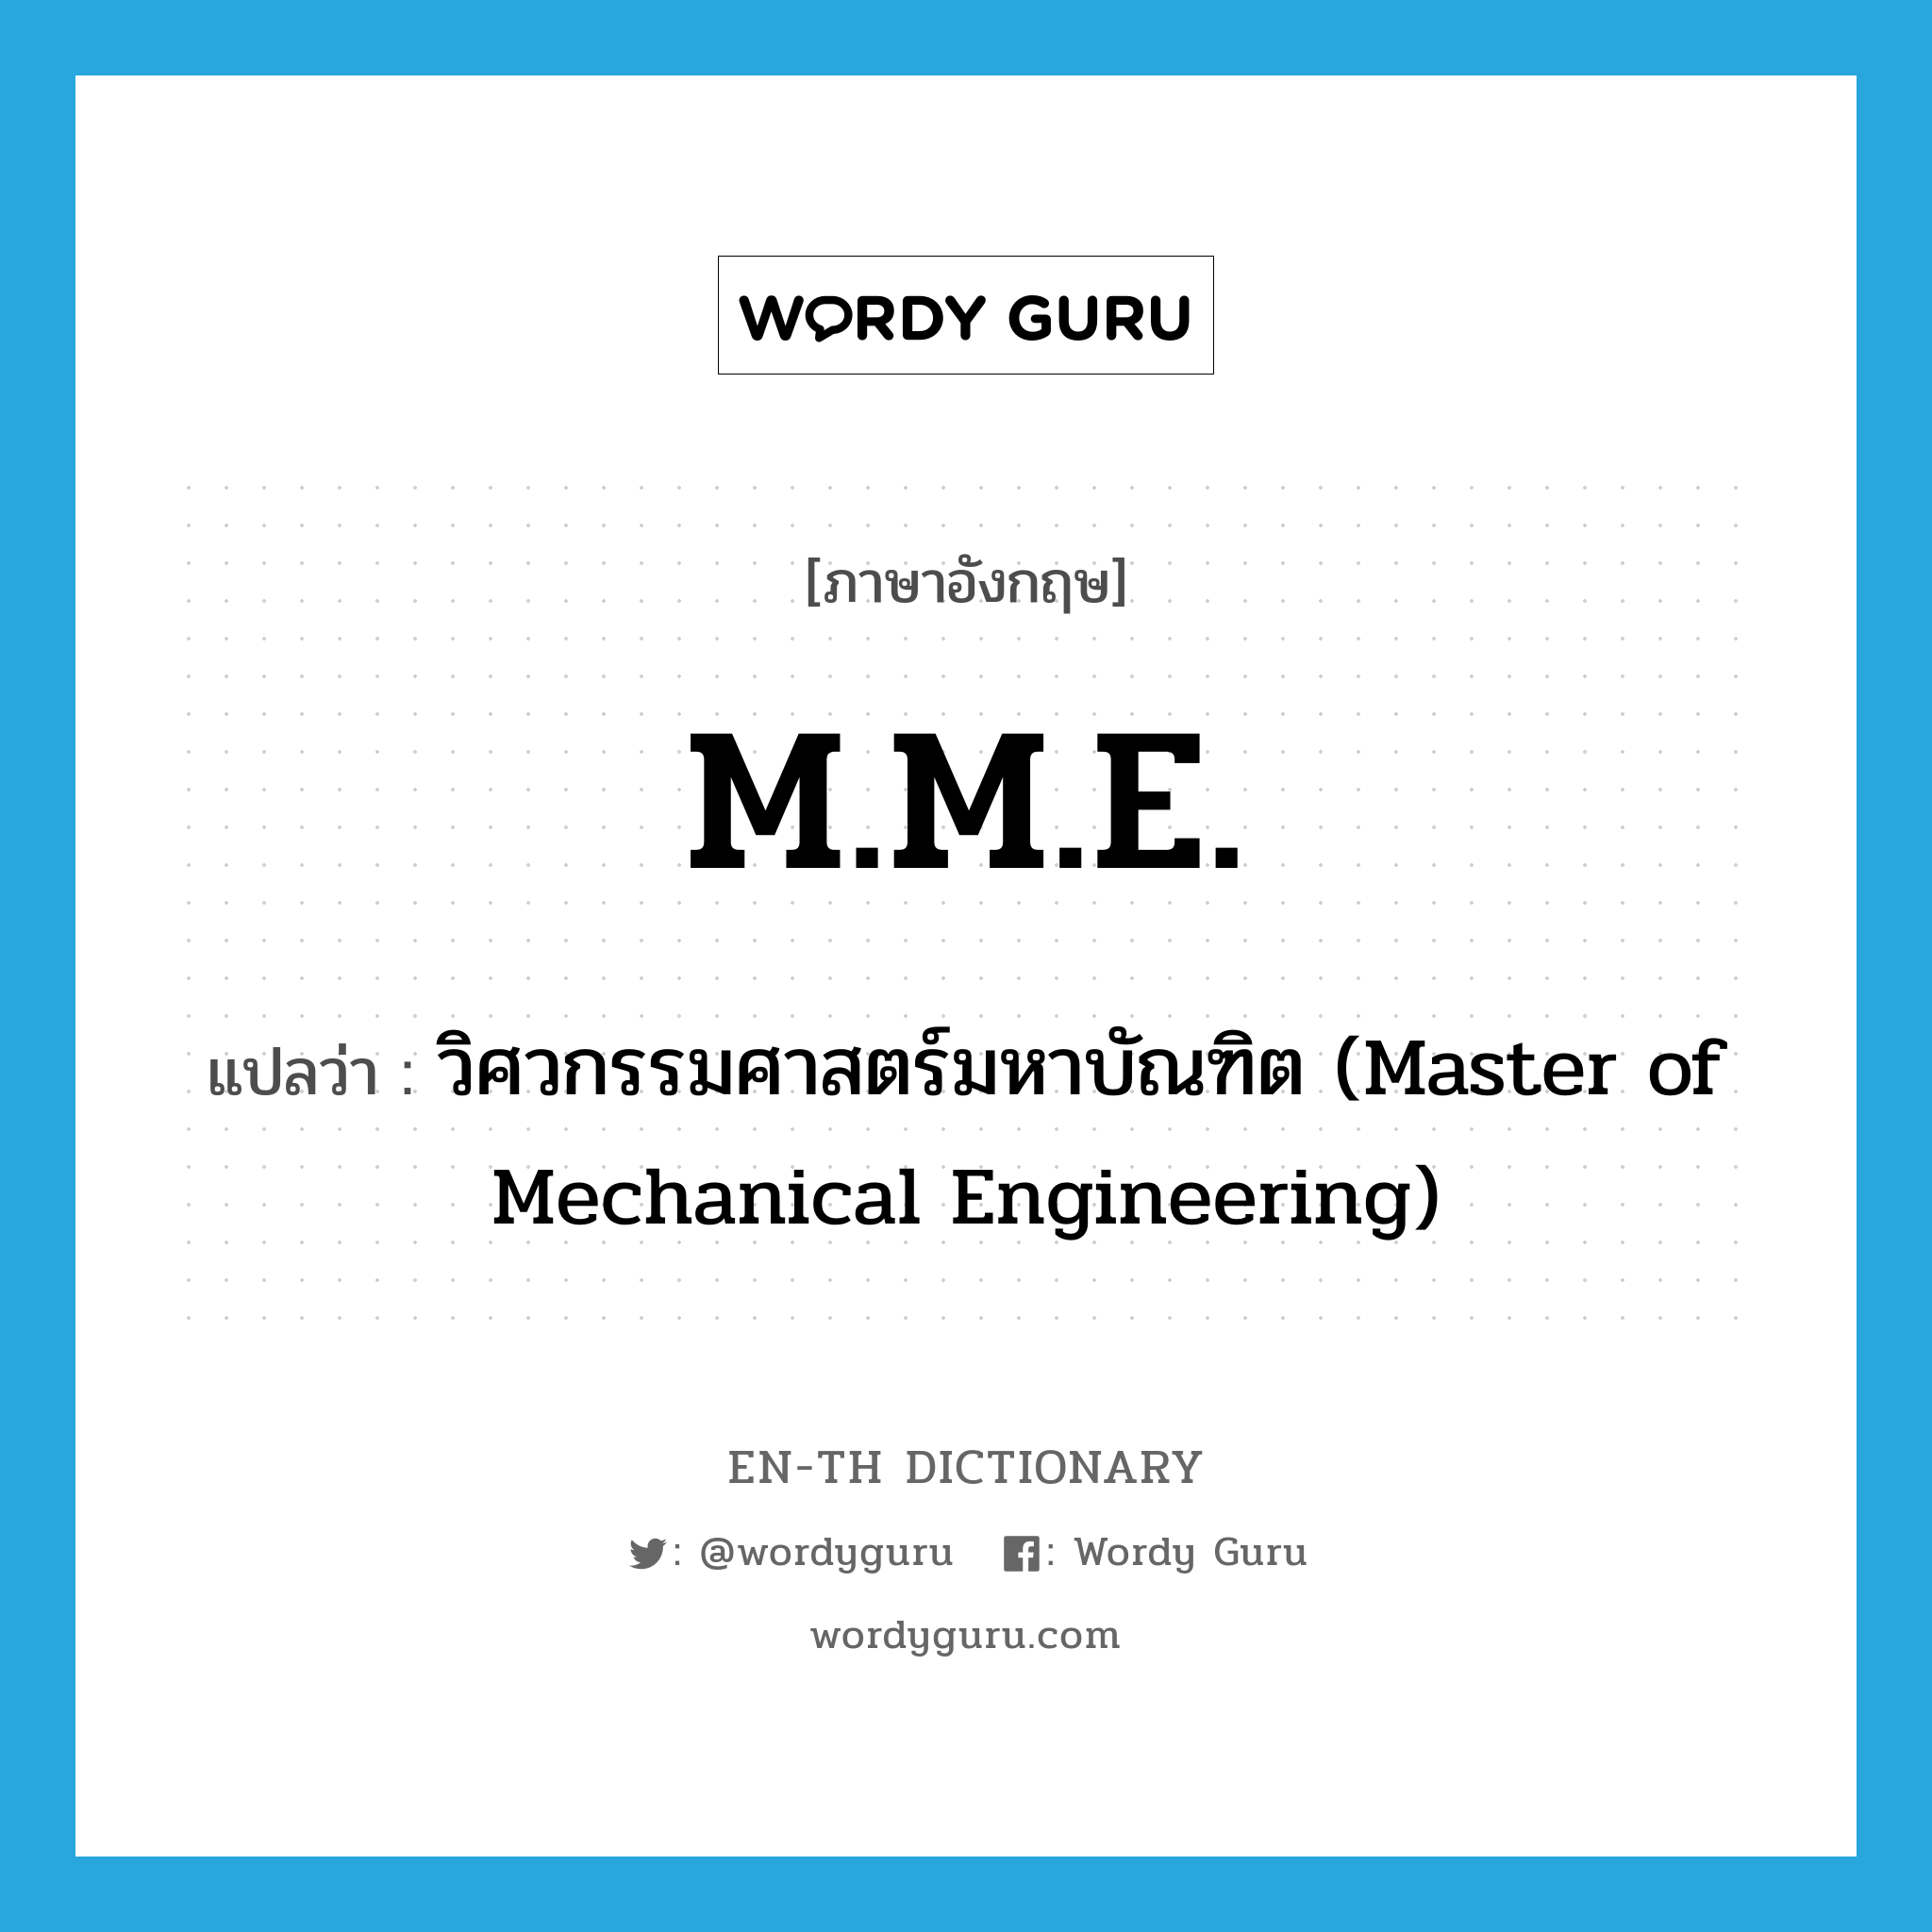 วิศวกรรมศาสตร์มหาบัณฑิต (Master of Mechanical Engineering) ภาษาอังกฤษ?, คำศัพท์ภาษาอังกฤษ วิศวกรรมศาสตร์มหาบัณฑิต (Master of Mechanical Engineering) แปลว่า M.M.E. ประเภท ABBR หมวด ABBR